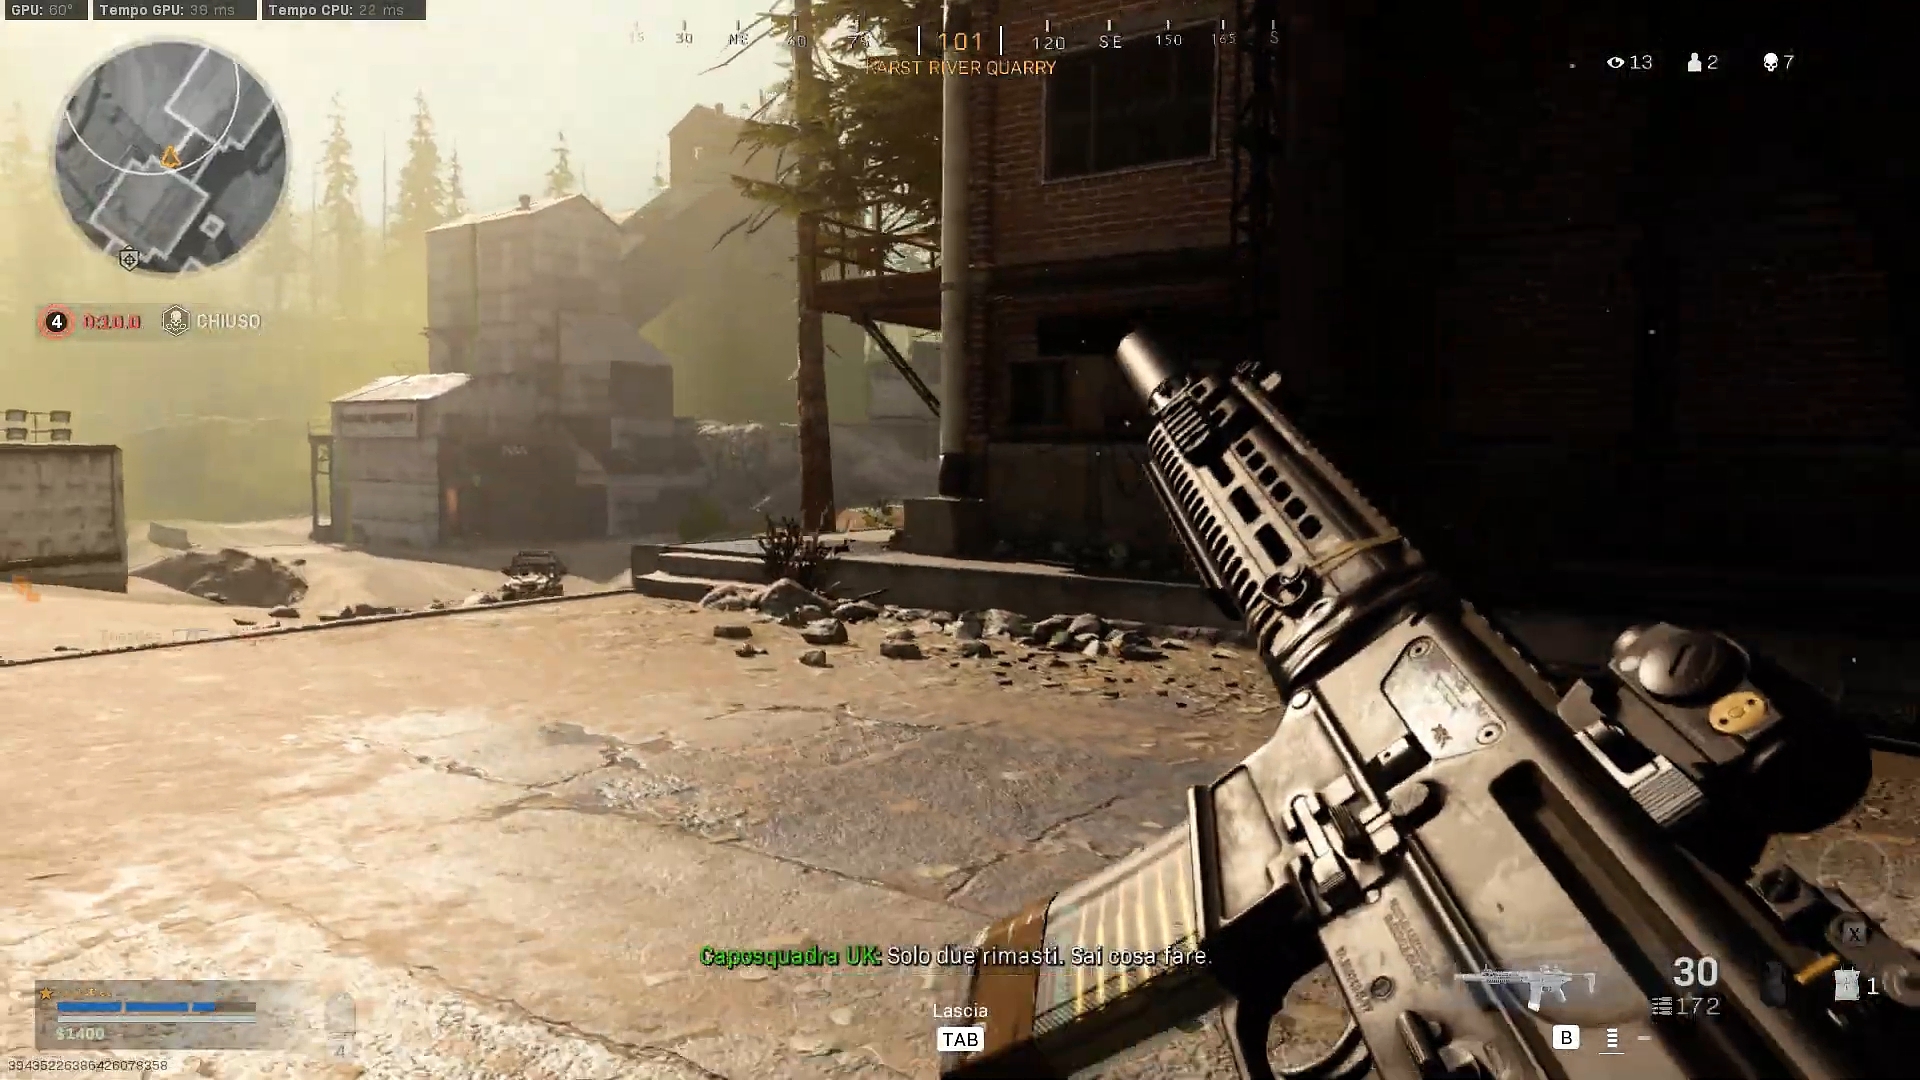 Immagine pubblicata in relazione al seguente contenuto: YouTube Gaming | Call of Duty: Warzone | Last shots before the Victory | Nome immagine: news32006_Call-of-Duty-Warzone-Screenshot_1.jpg